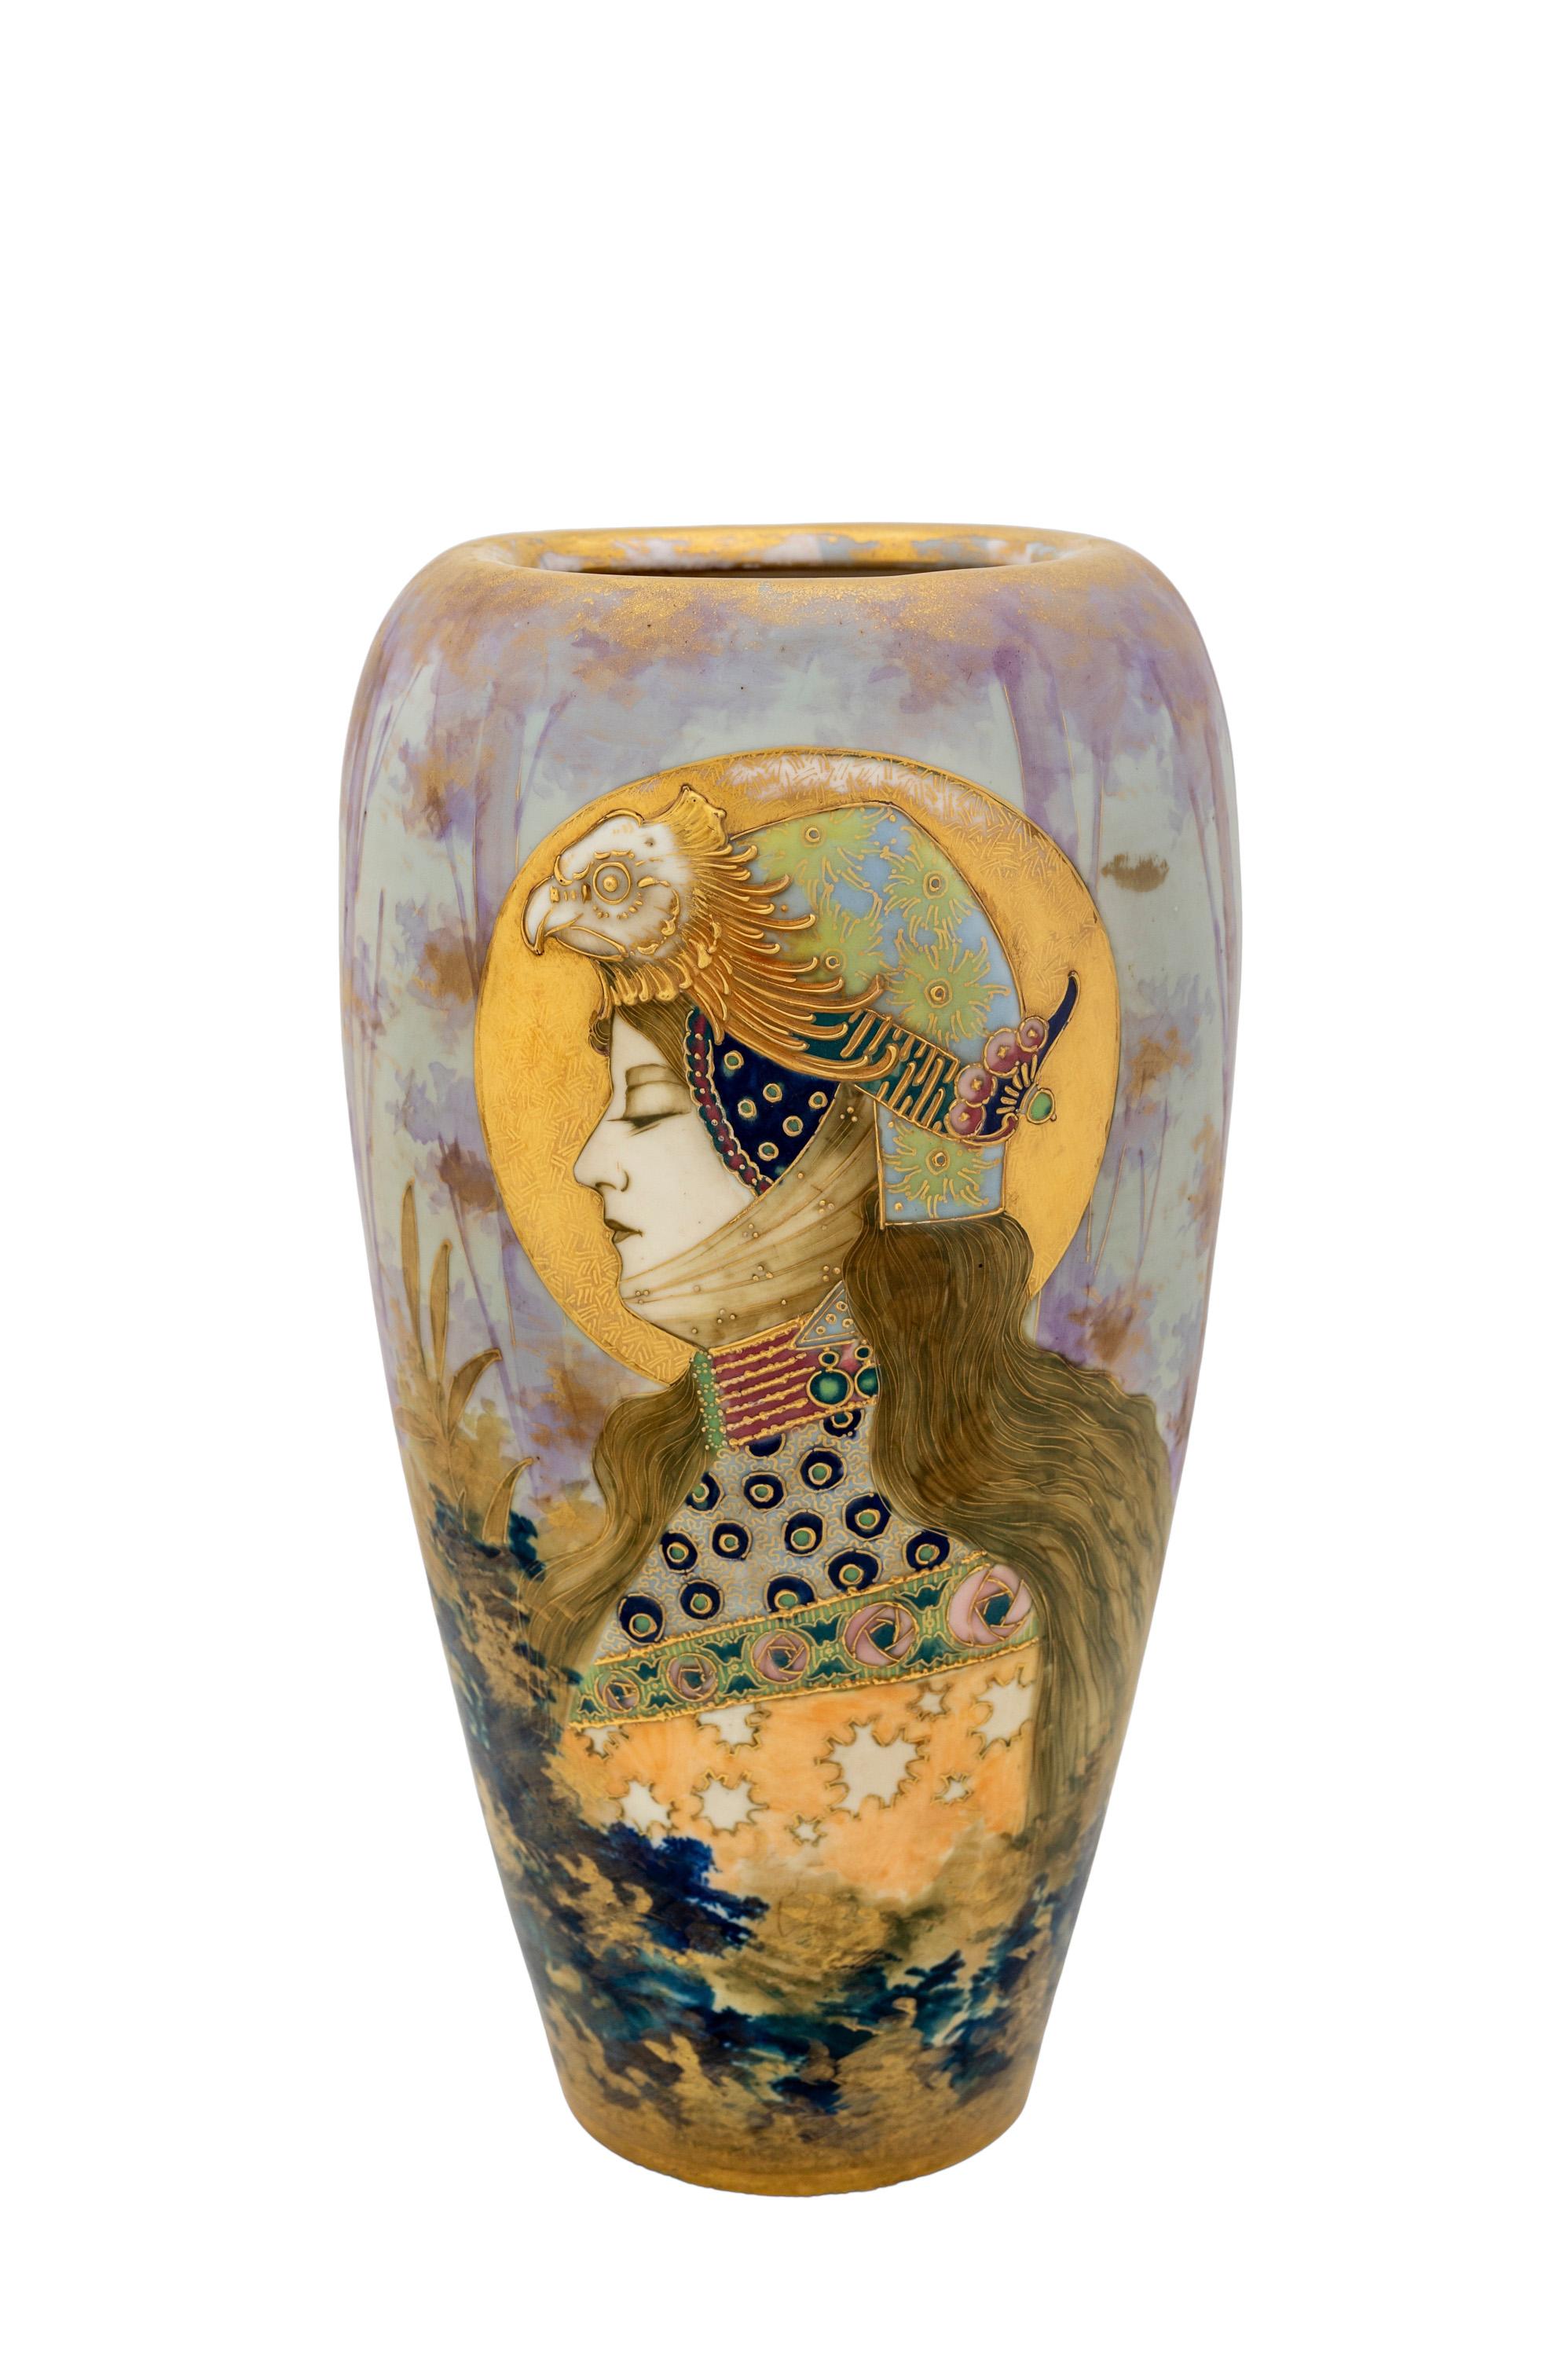 Austrian Art Nouveau Ceramic portrait vase manufactured by Amphora-Werke Riessner, Stellmacher & Kessel Turn-Teplitz circa 1899 

Austrian Art Nouveau Ceramic portrait Vase 